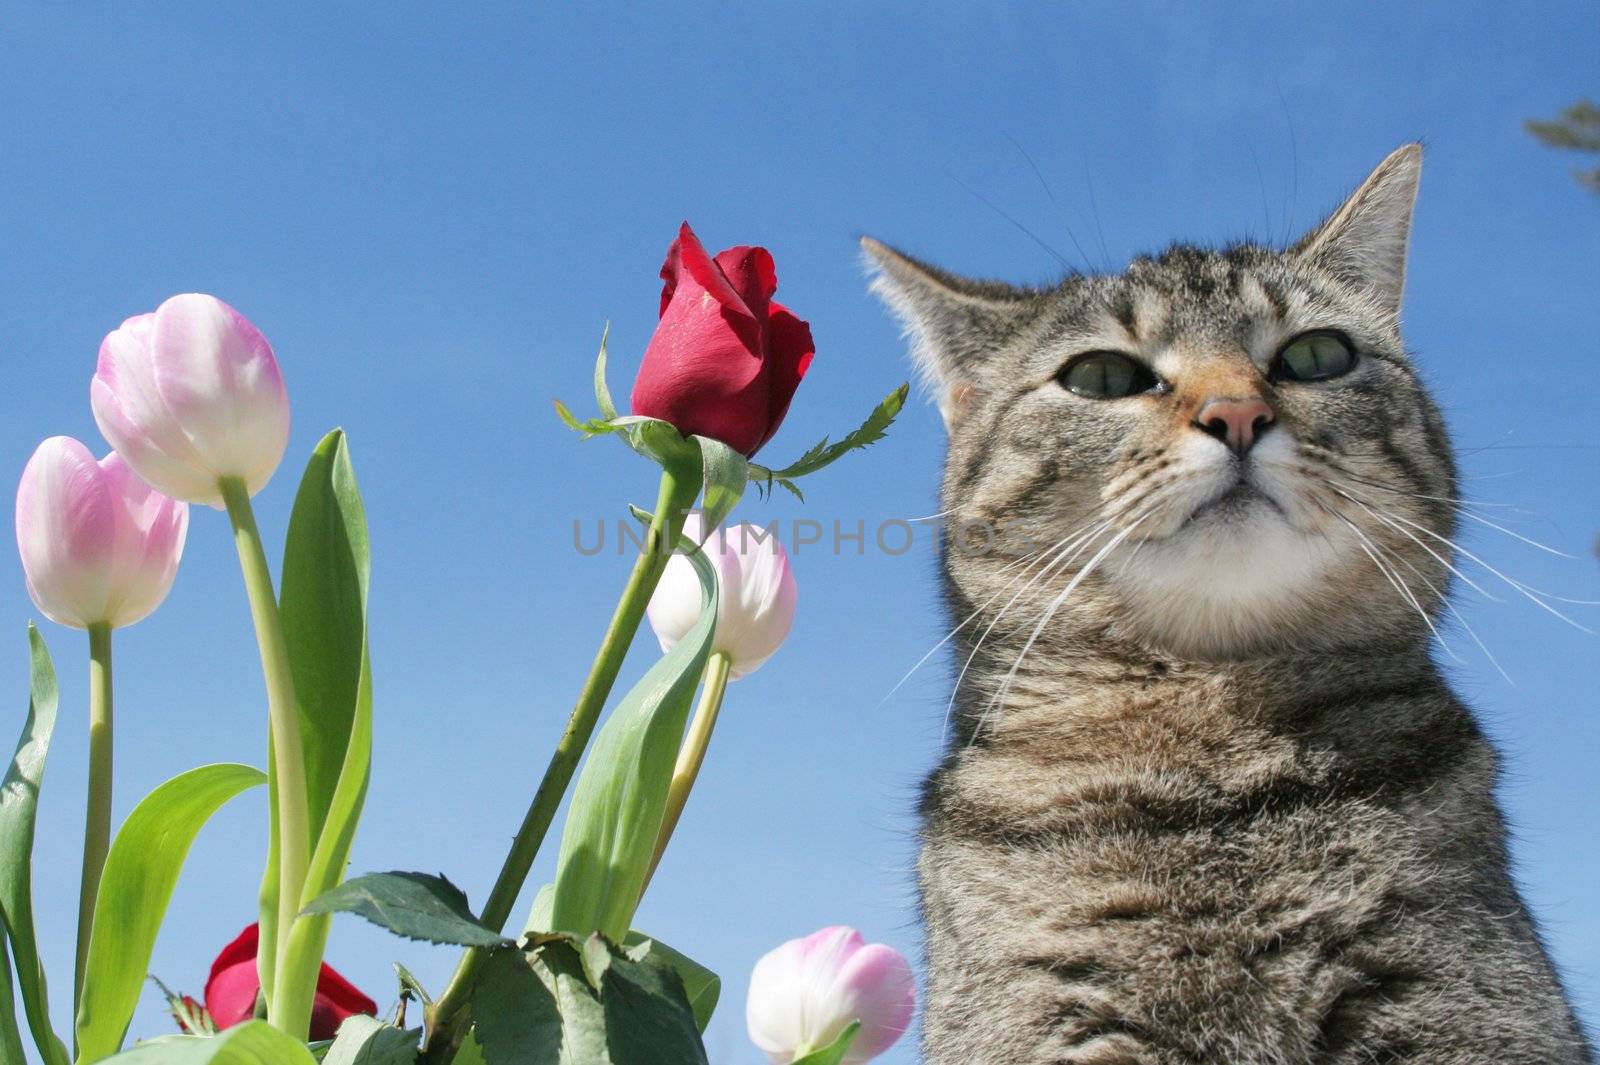 Gray tabby cat in the flower garden